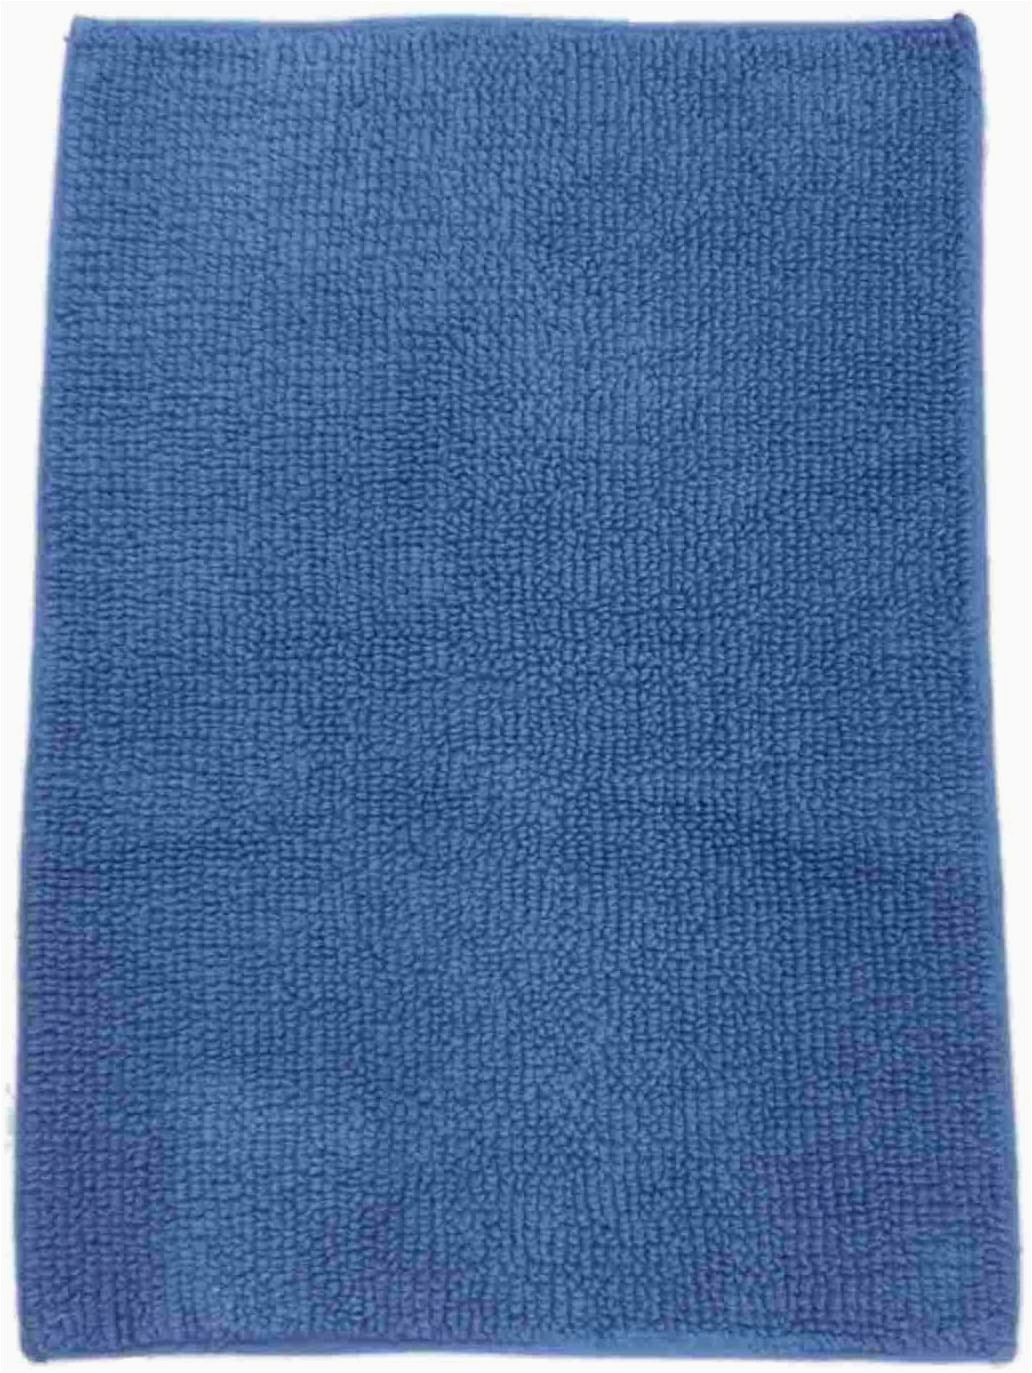 Sonoma Cotton Bath Rugs Amazon sonoma Reversible Blue Plush Pile Throw Rug